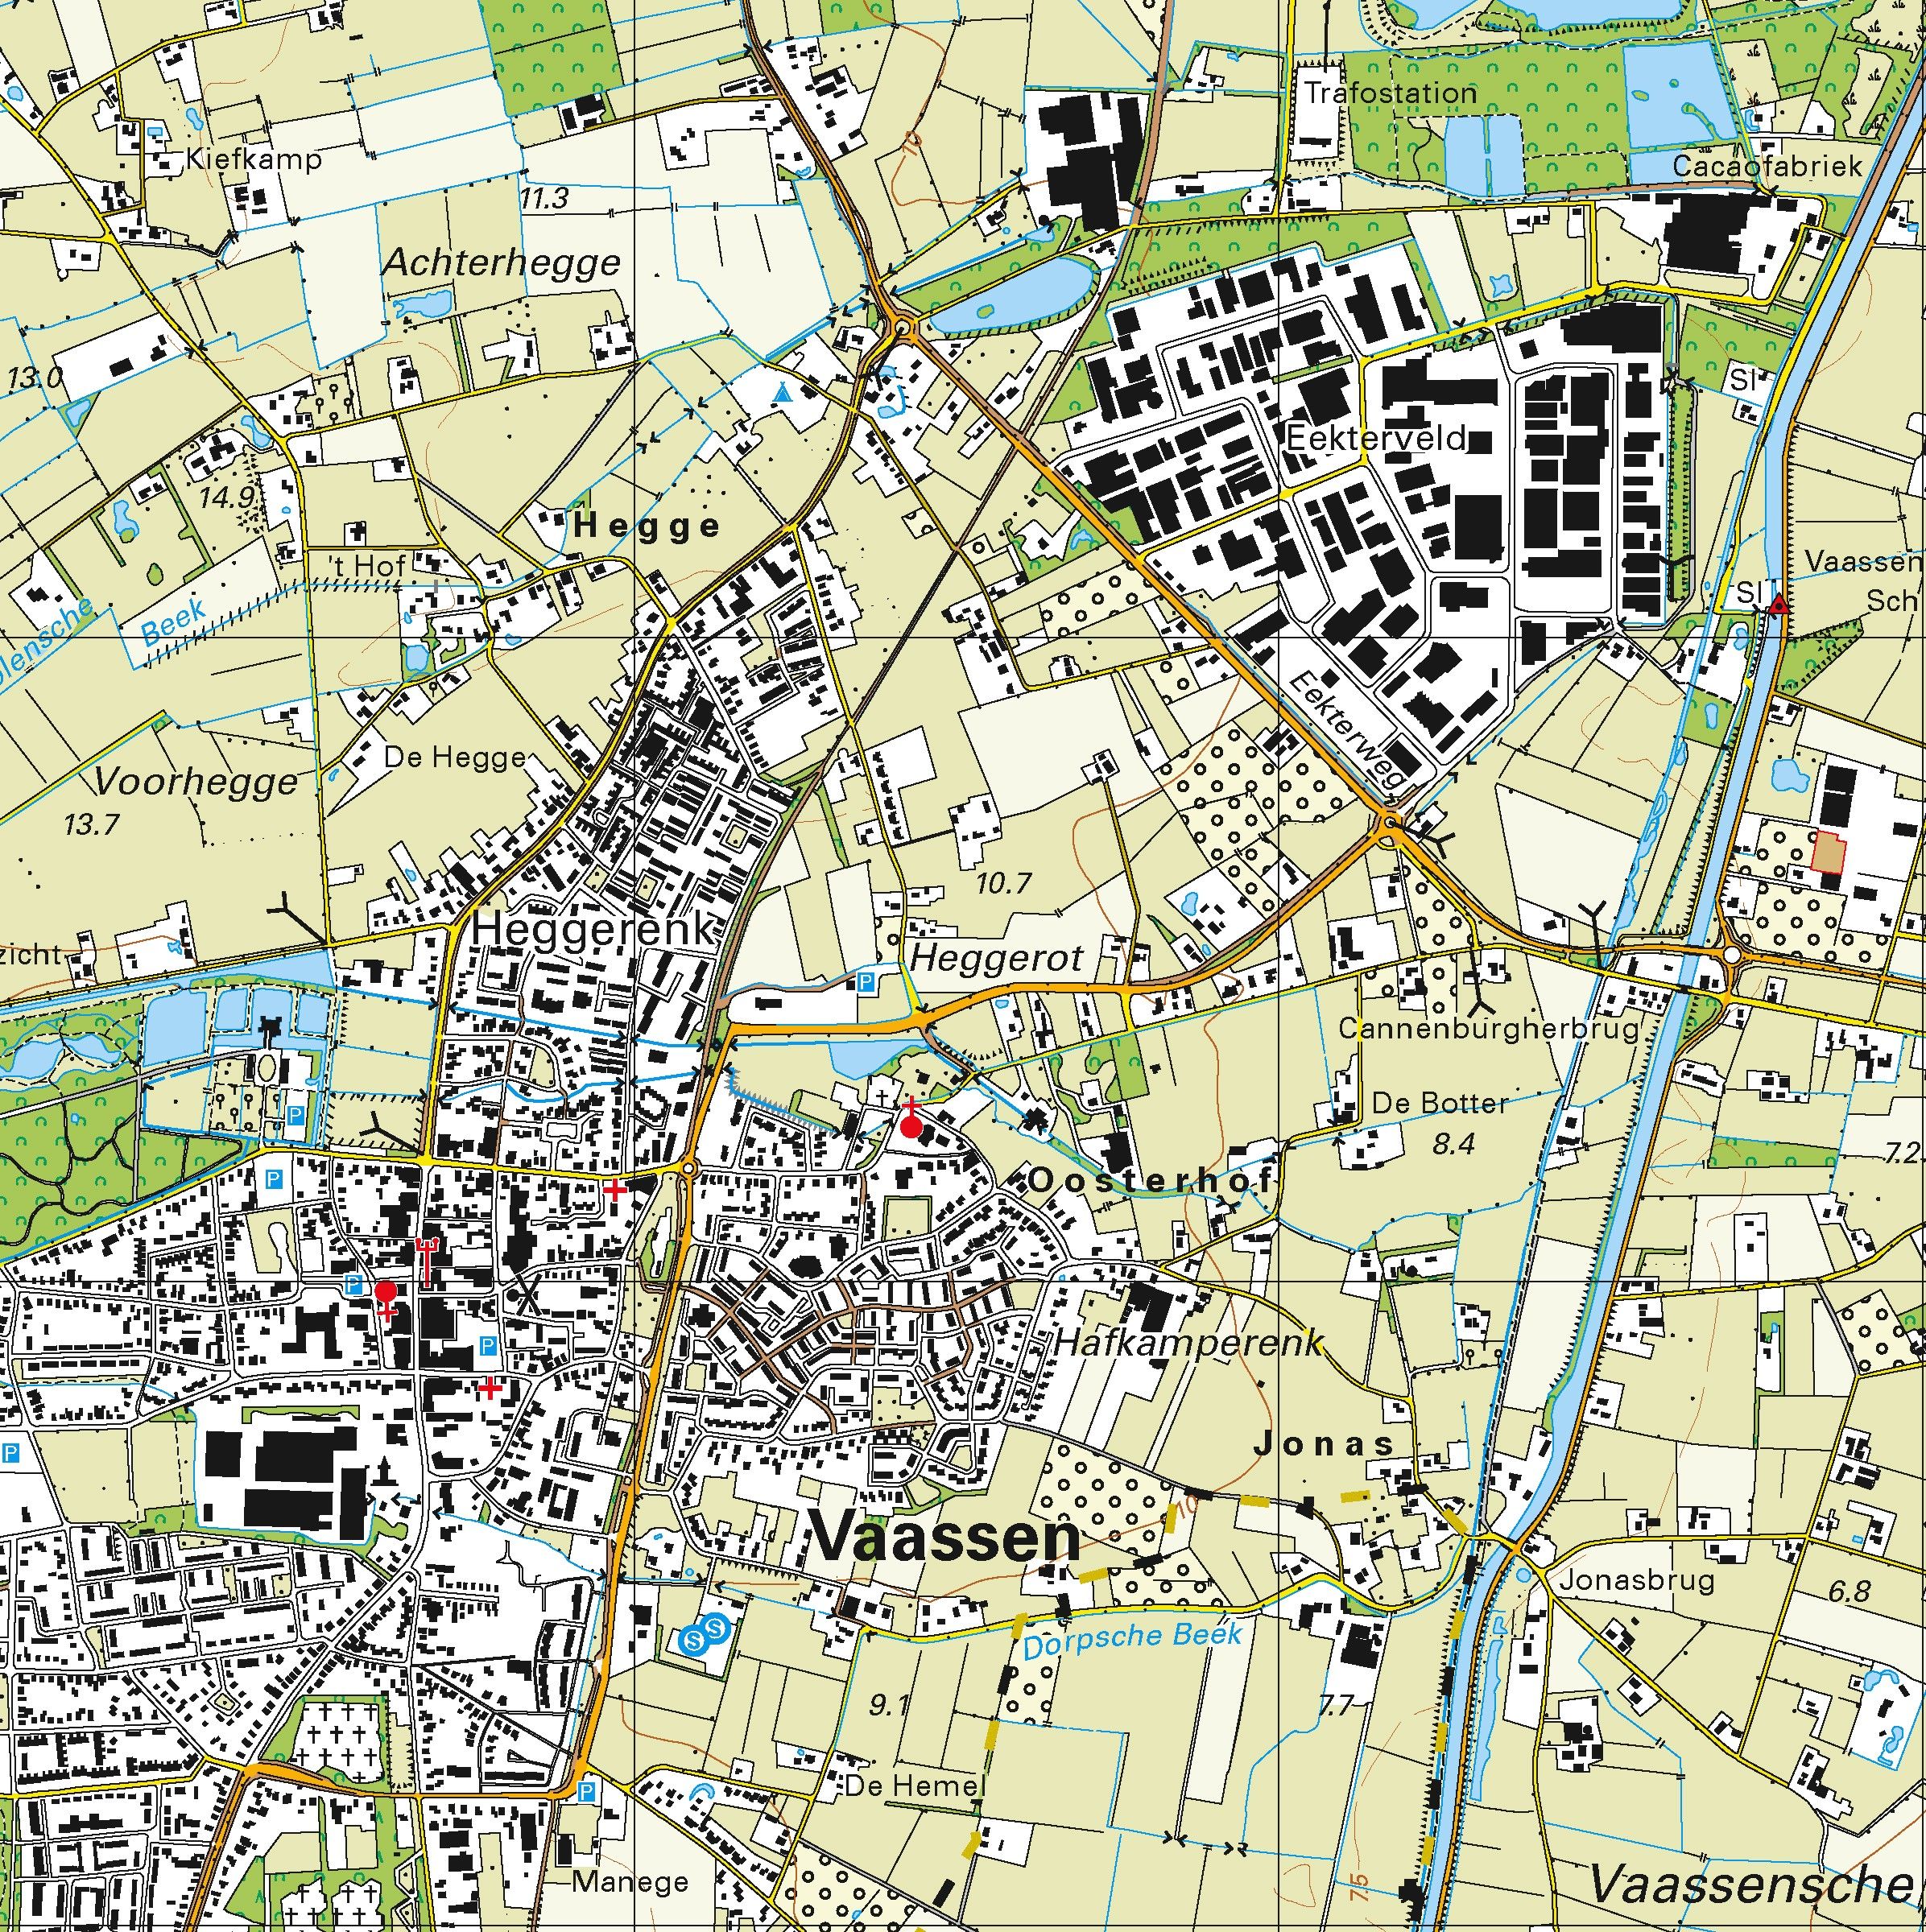 Topografische kaart schaal 1:25.000 (Apeldoorn, Vaassen, Epe, Nunspeet, Elspeet, Uddel)